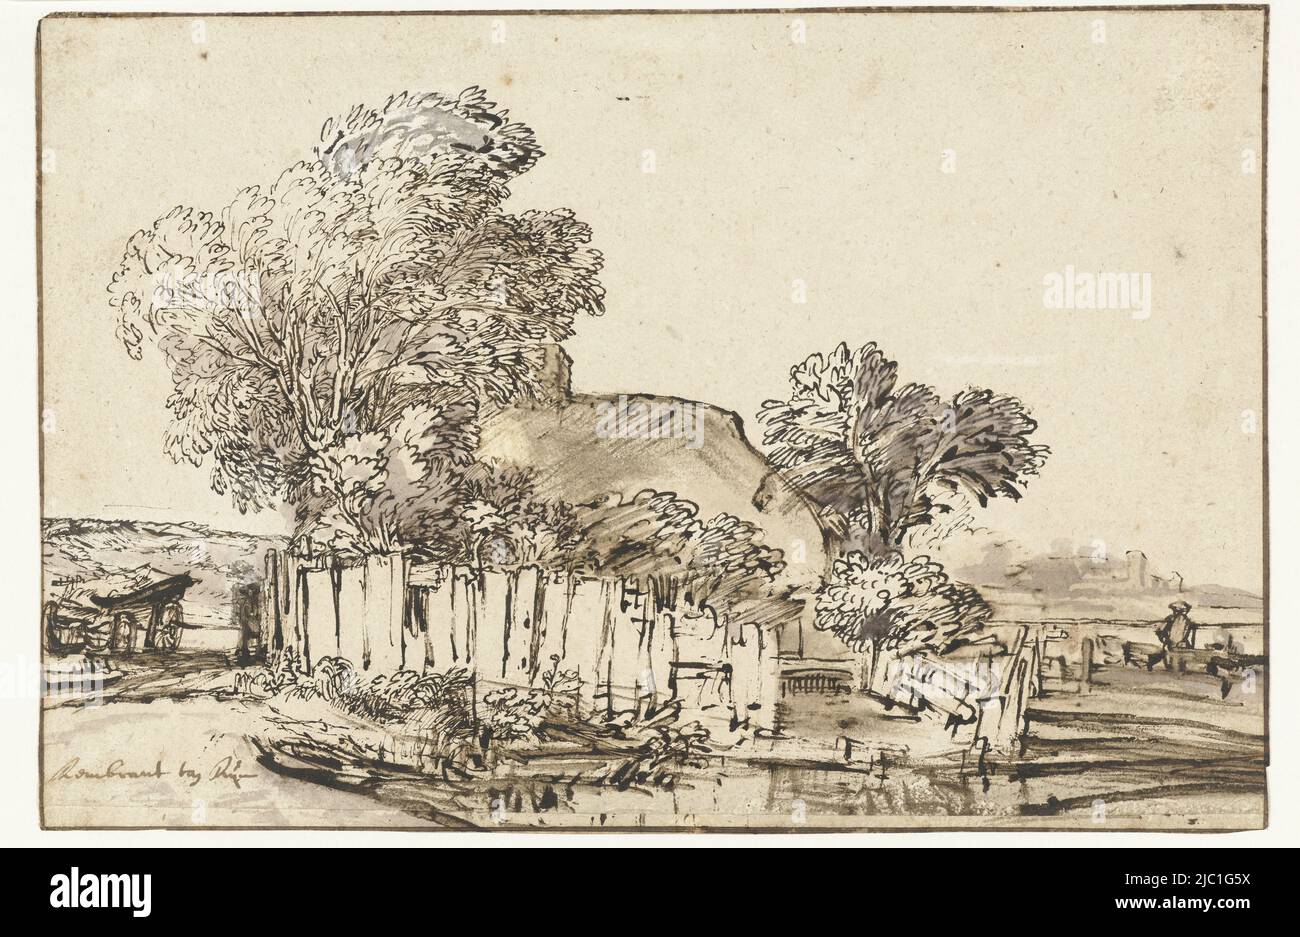 Cottage con Paling bianco tra gli alberi, disegnatore: Rembrandt van Rijn, Amsterdam, c. 1648, carta, penna, spazzola, h 171 mm (striscia di carta da 6 mm aggiunta in basso) x l 255 mm Foto Stock